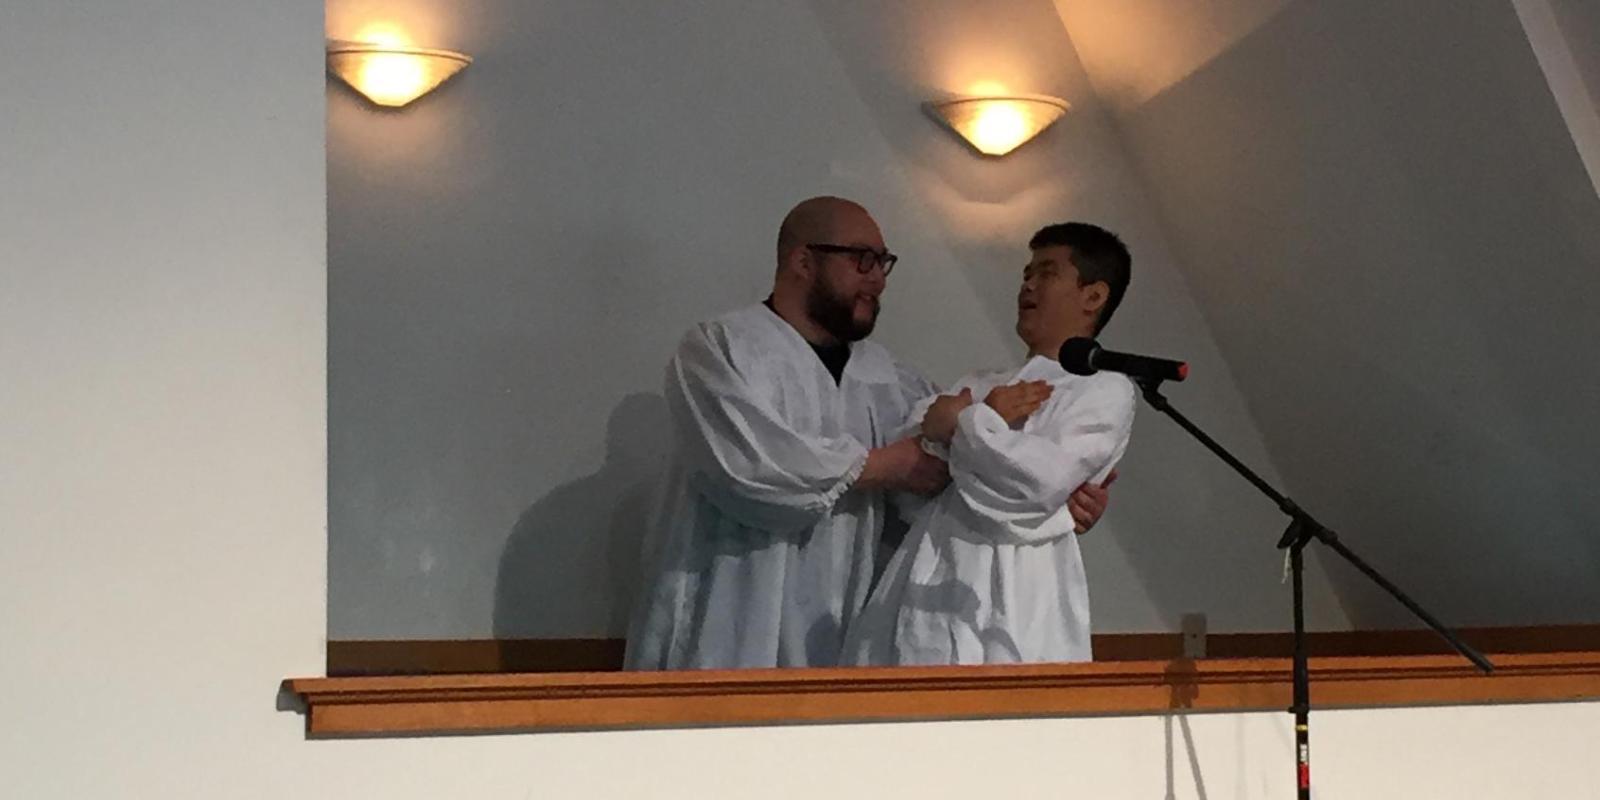 Danny Du Baptism